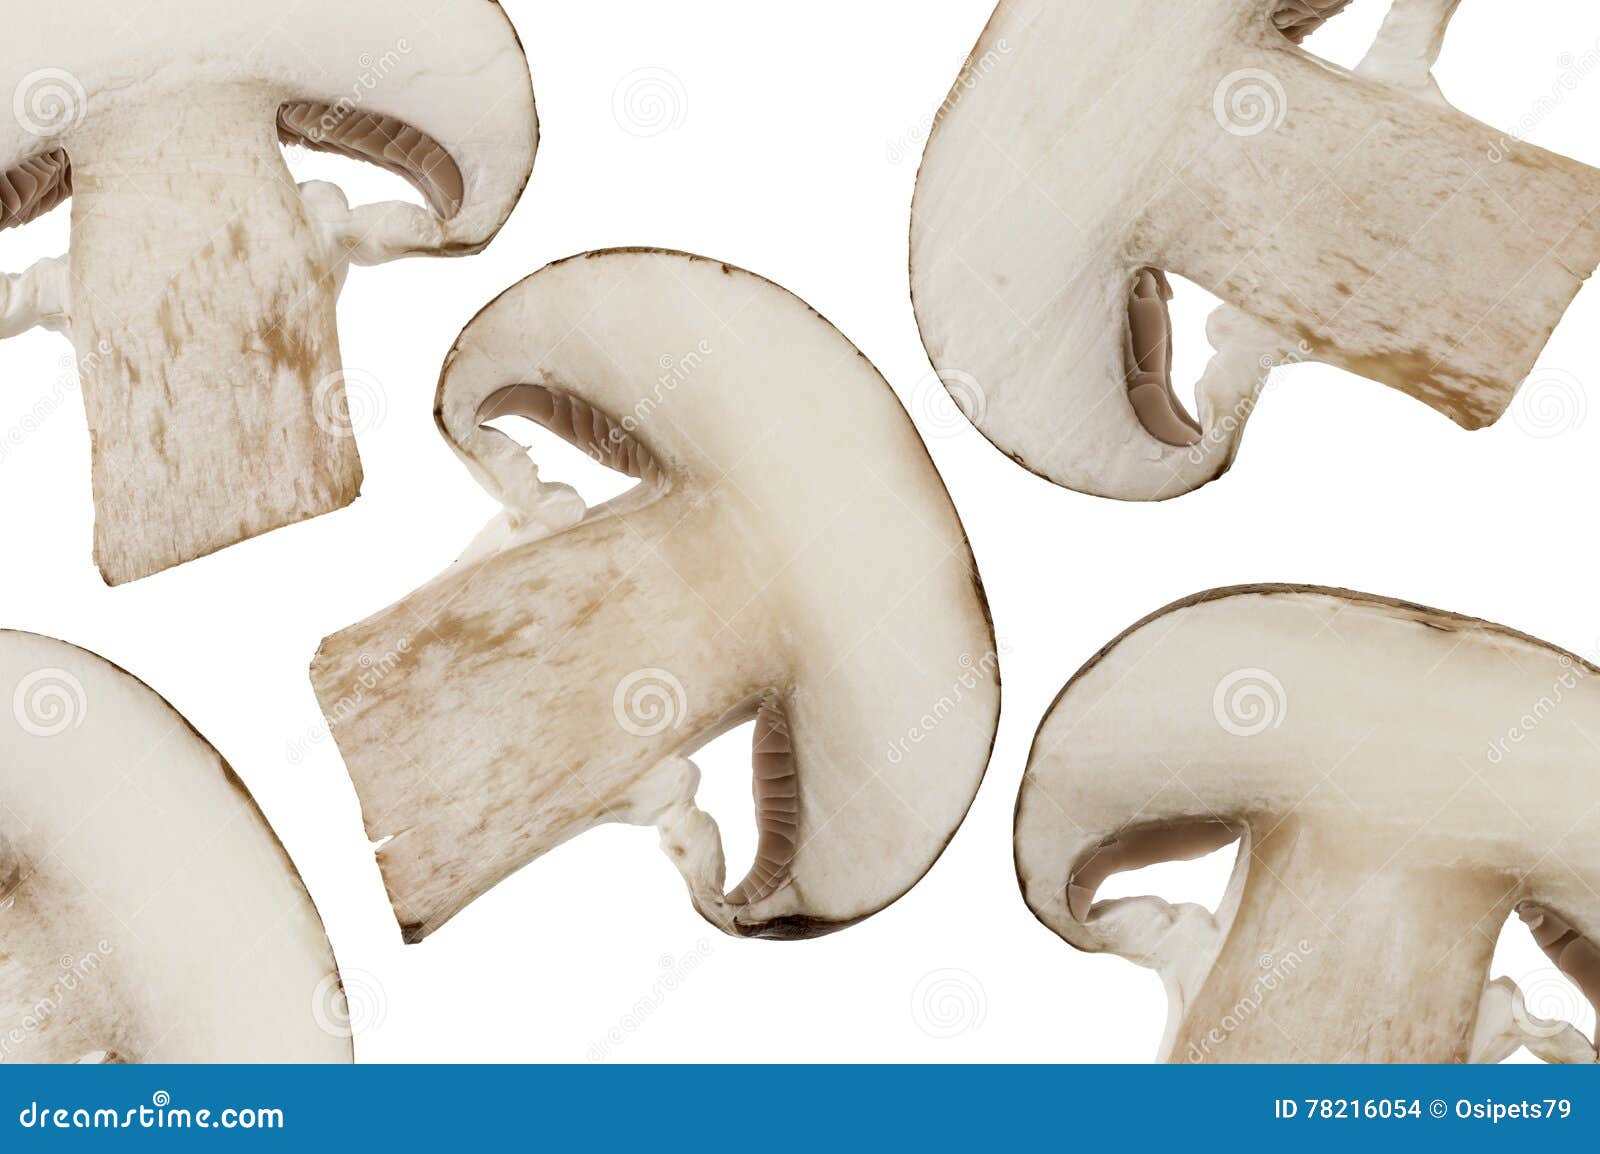 切片蘑菇 库存图片. 图片 包括有 部分, 原始, 蔬菜, 有机, 副食品, 片式, 可食, 食物, 蘑菇 - 49307005